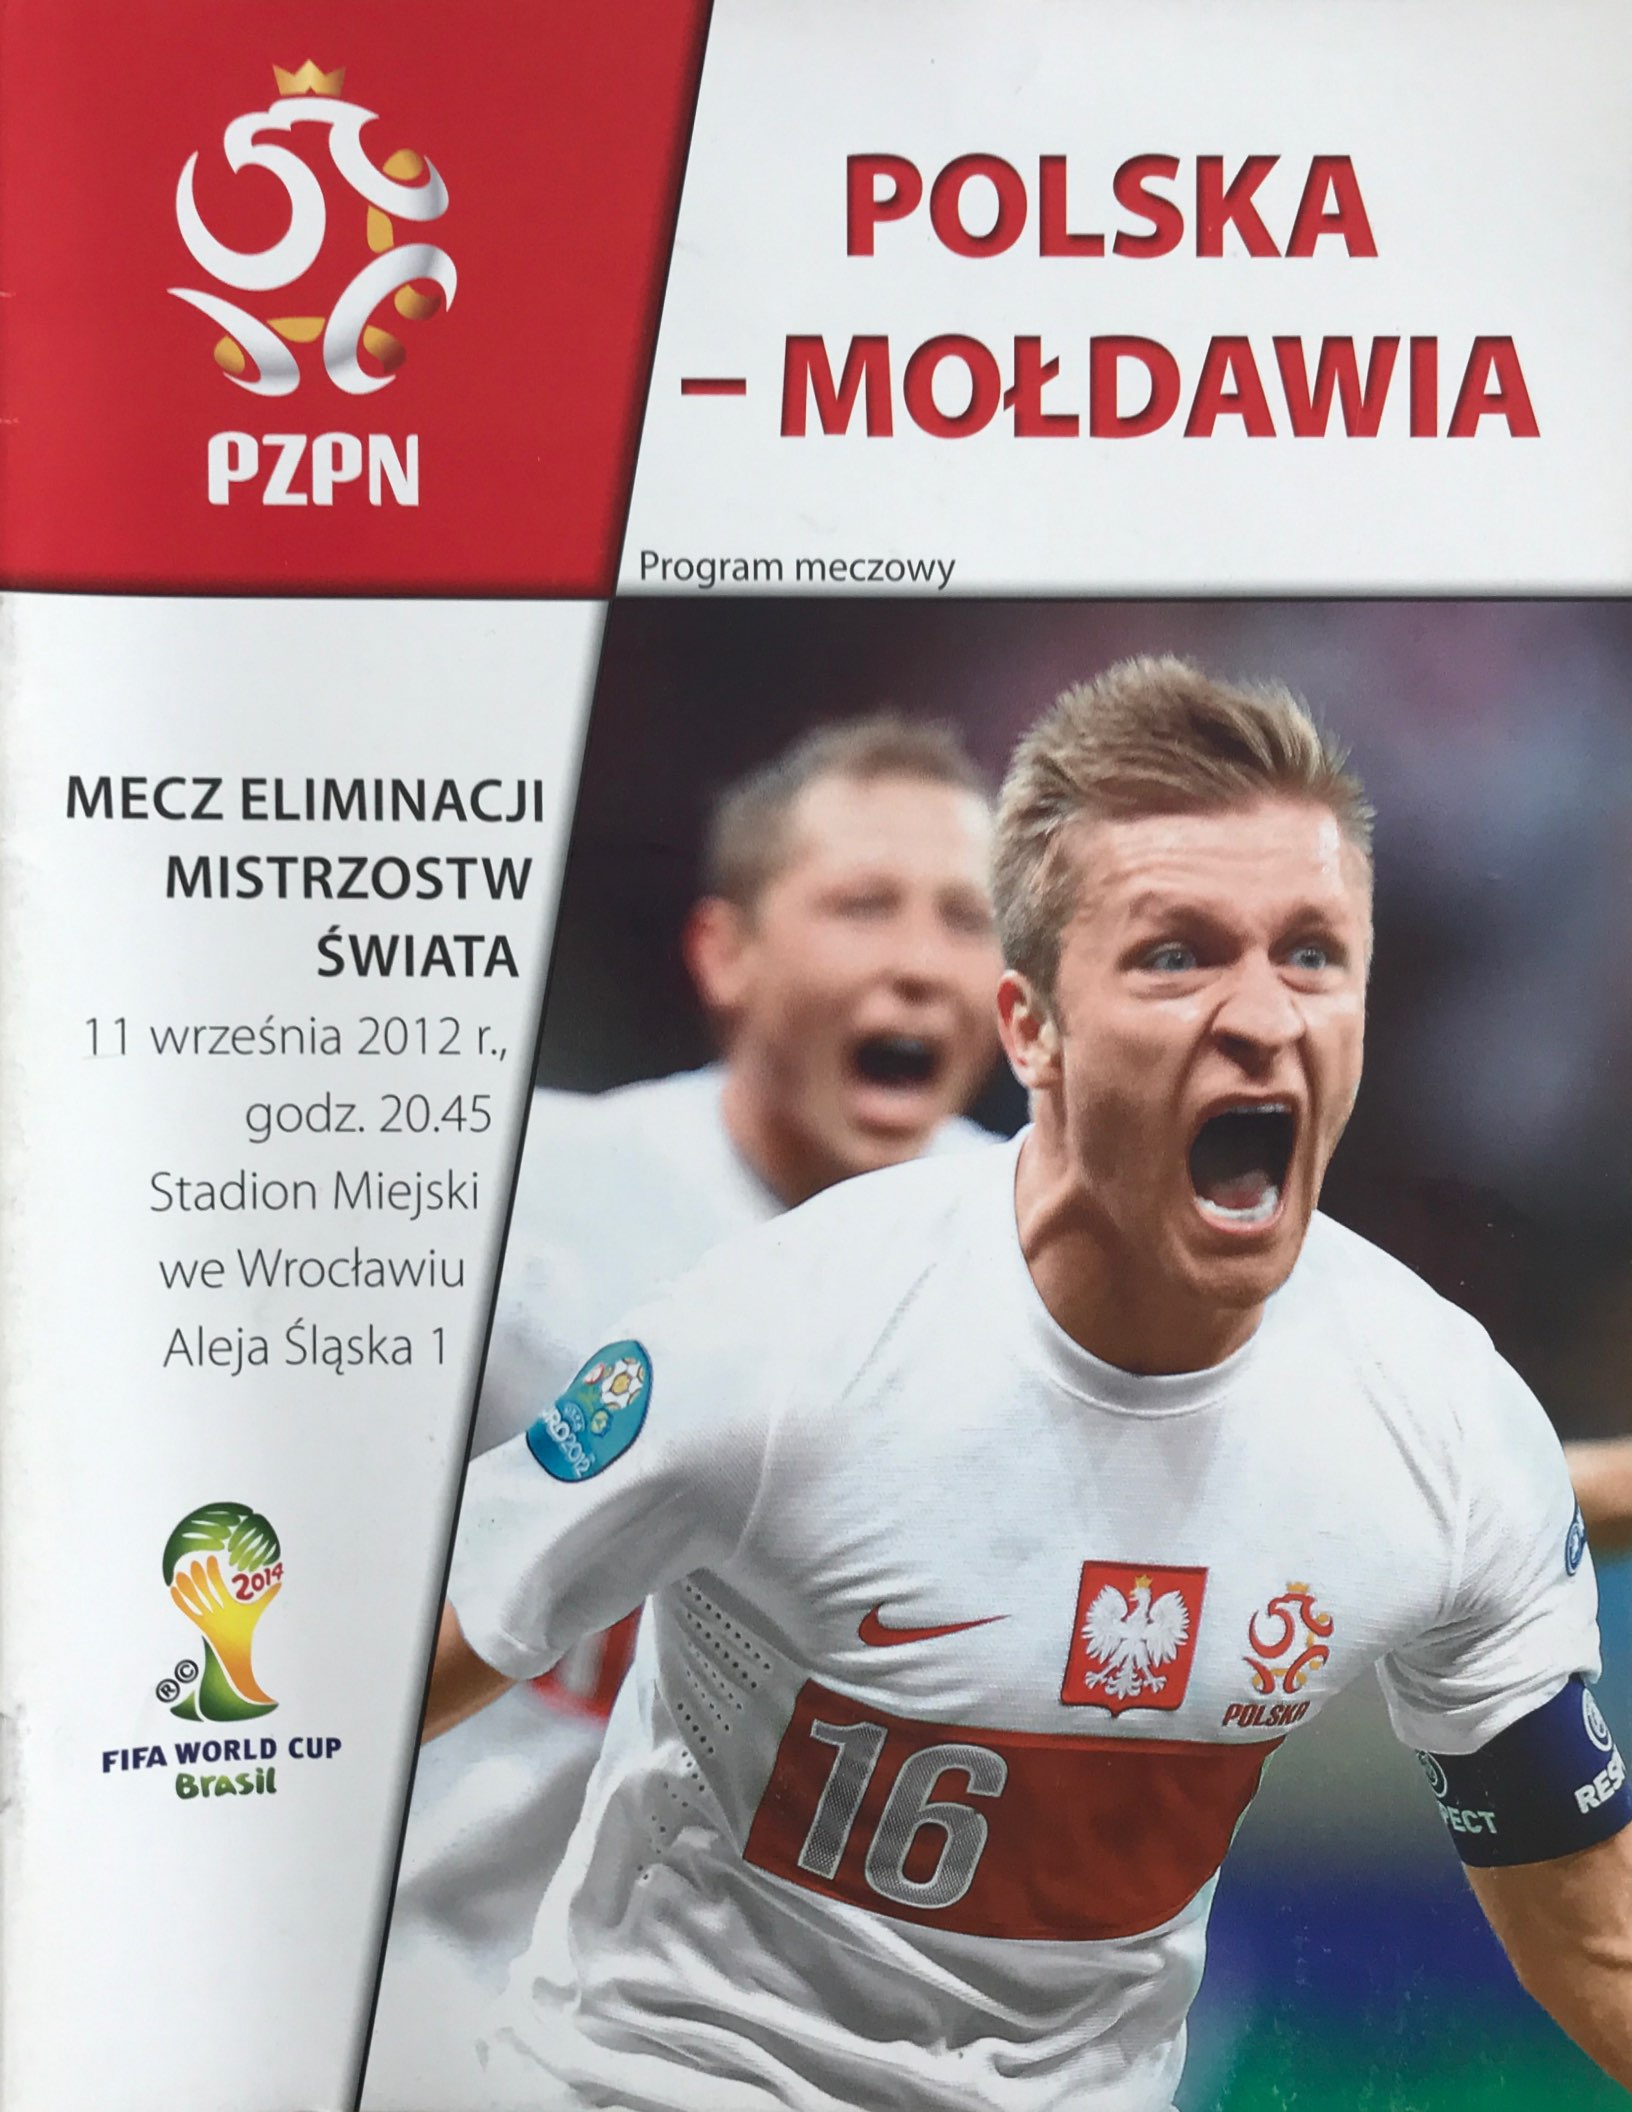 Program meczowy Polska - Mołdawia 2:0 (11.09.2012).